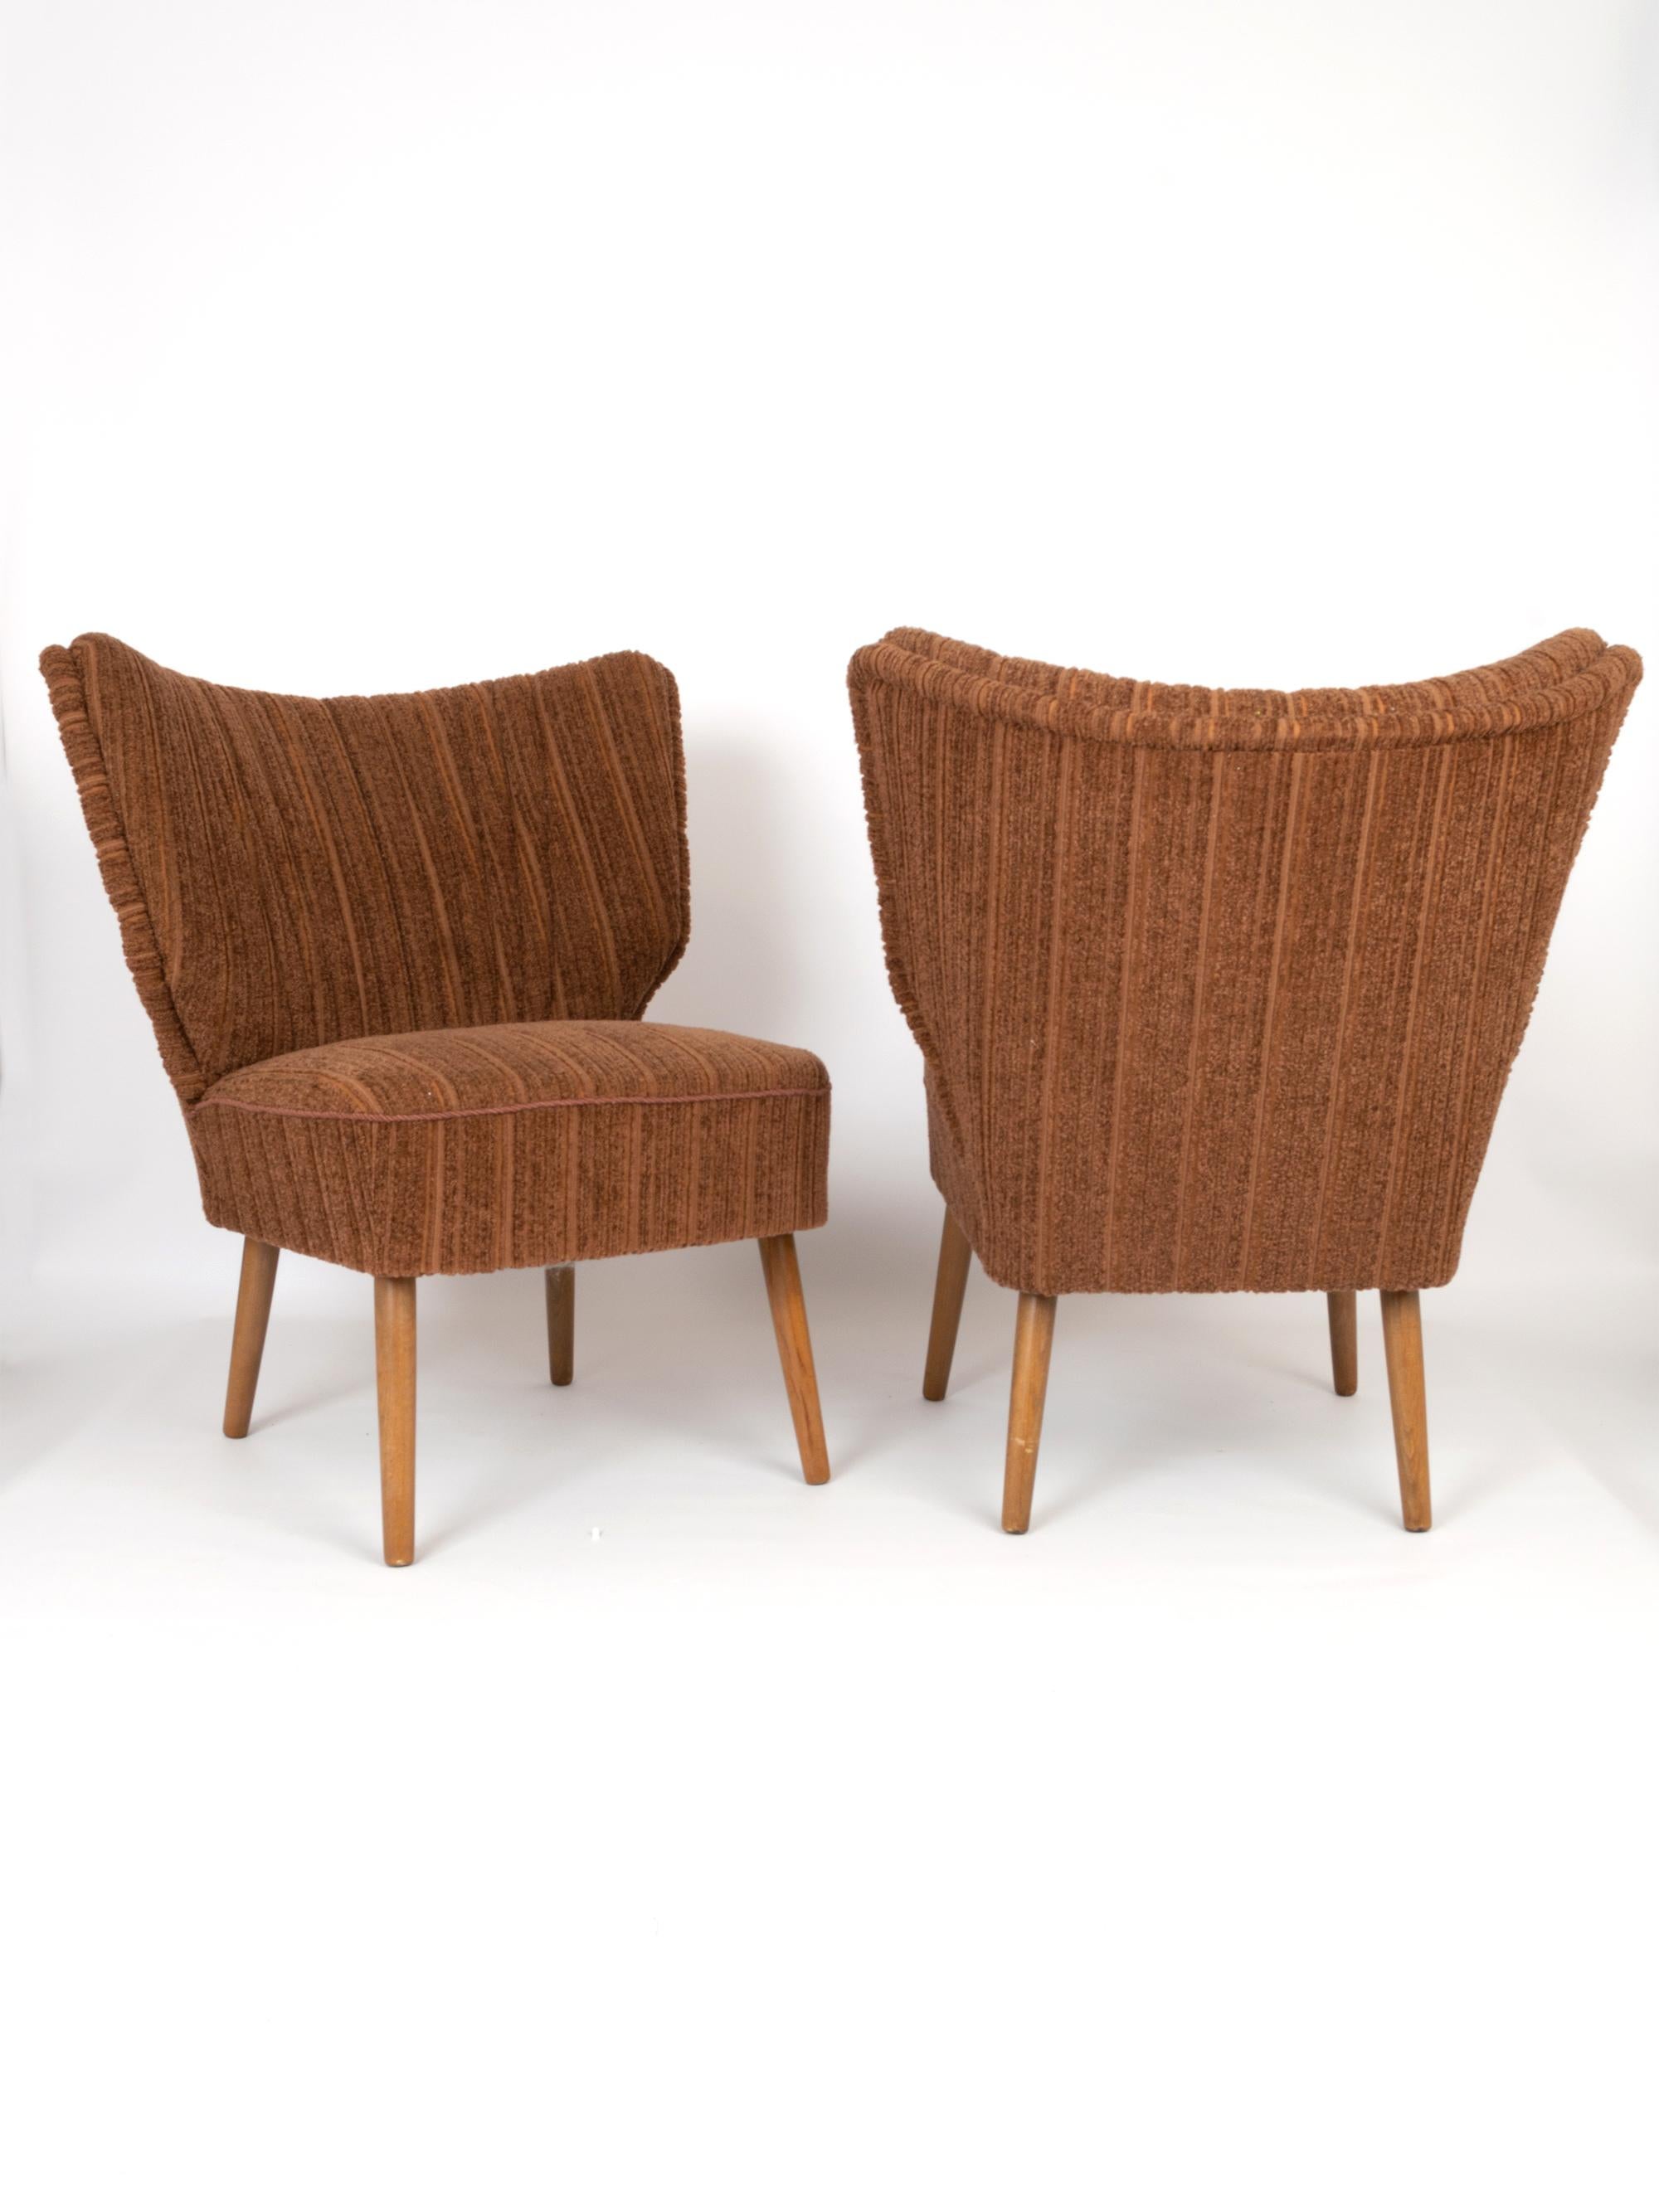 Une élégante paire de chaises de cocktail danoises d'origine datant de C.C. 1950. 
La tapisserie et le tissu d'origine sont présentés en excellent état vintage. Les pieds en teck sont solides et sains.